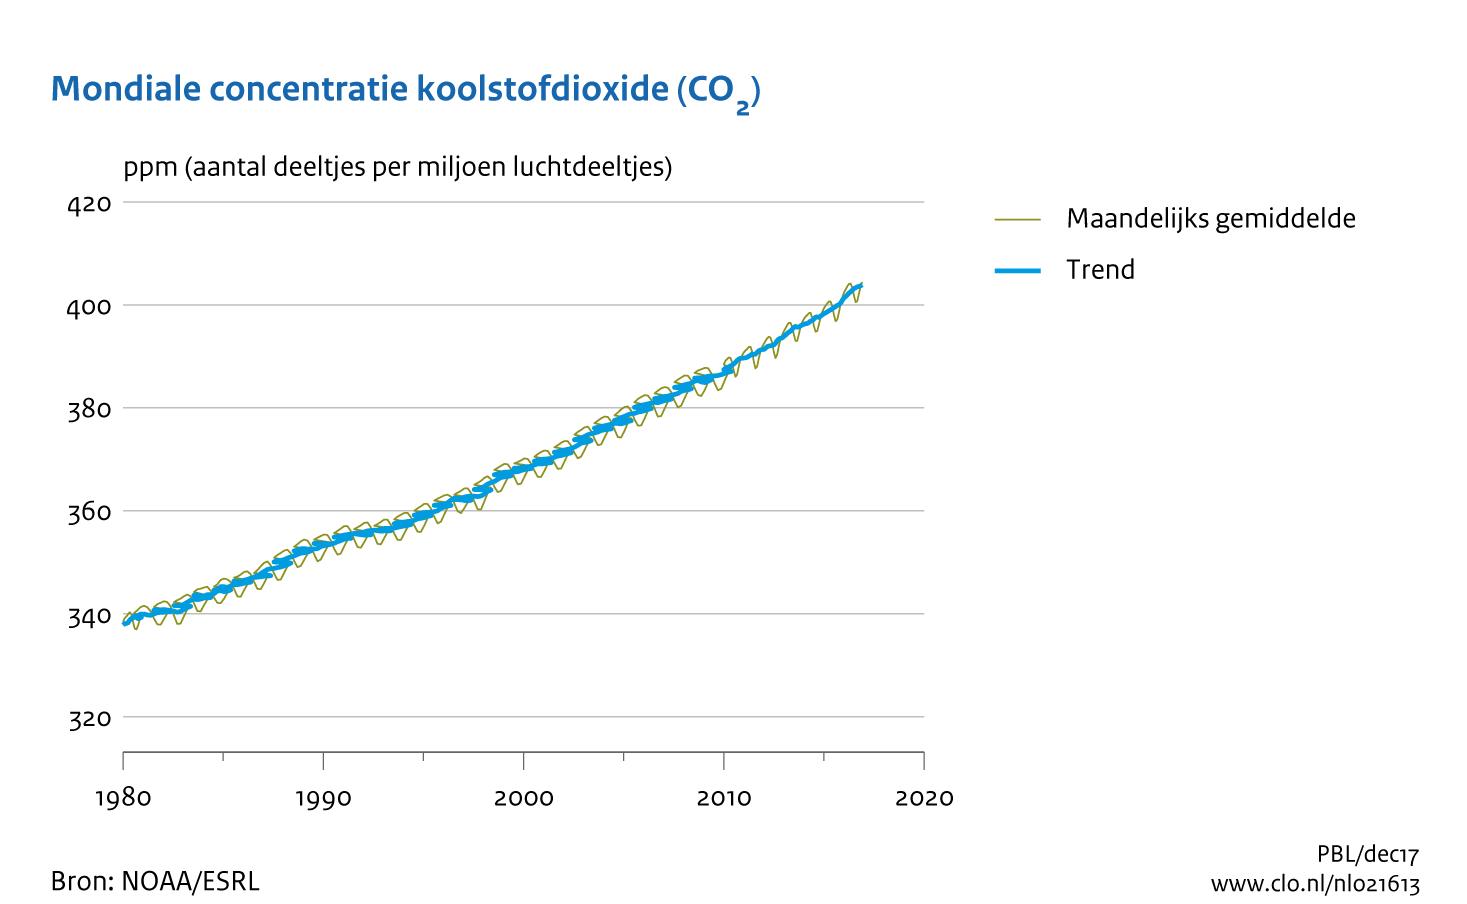 Figuur  mondiale concentratie koolstofdioxide. In de rest van de tekst wordt deze figuur uitgebreider uitgelegd.